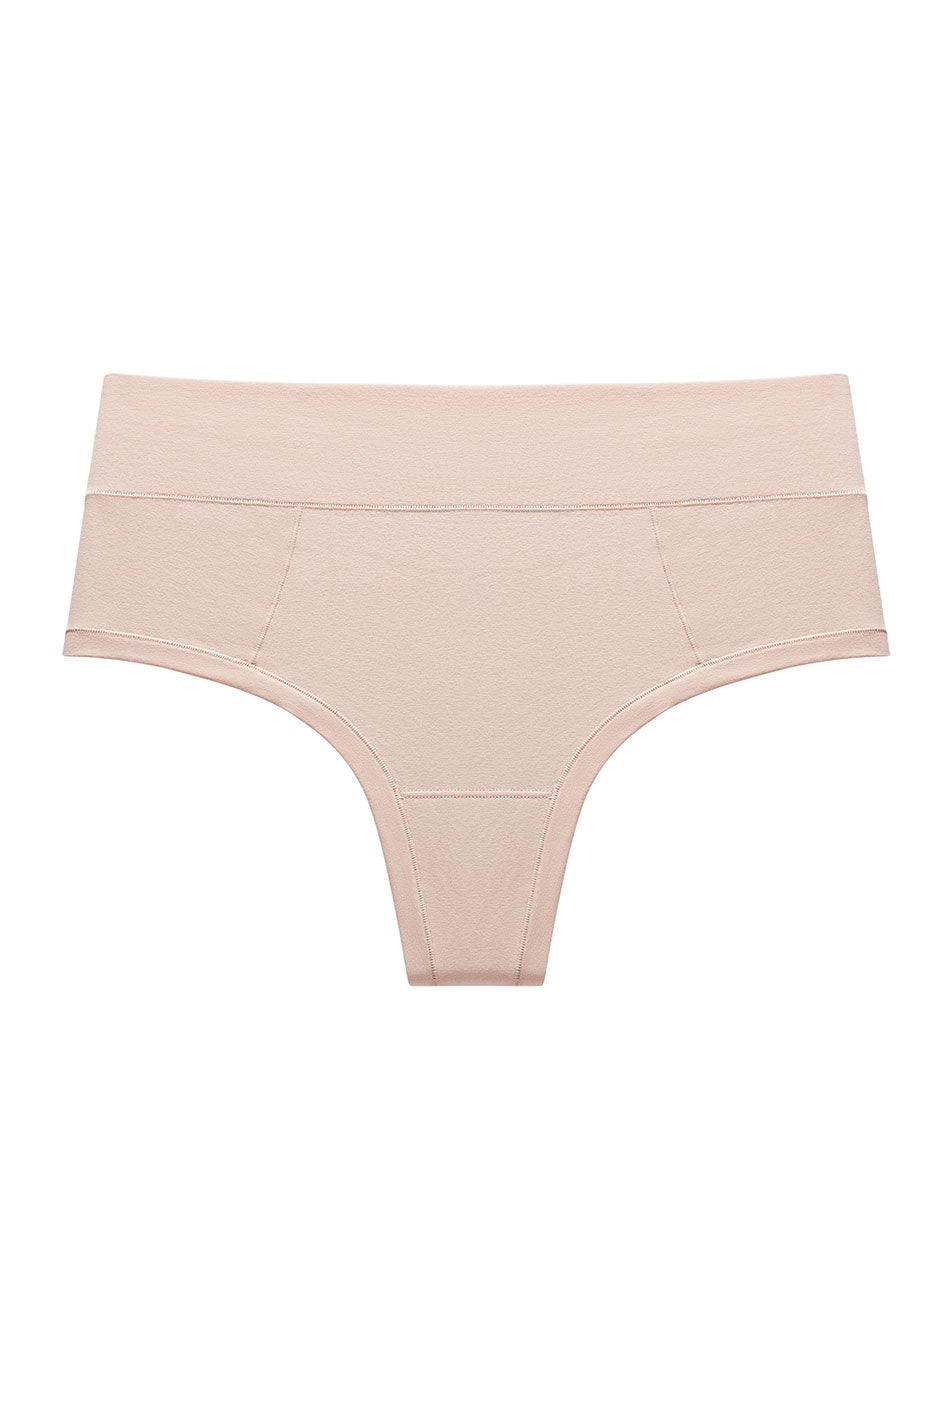 pima cotton underwear